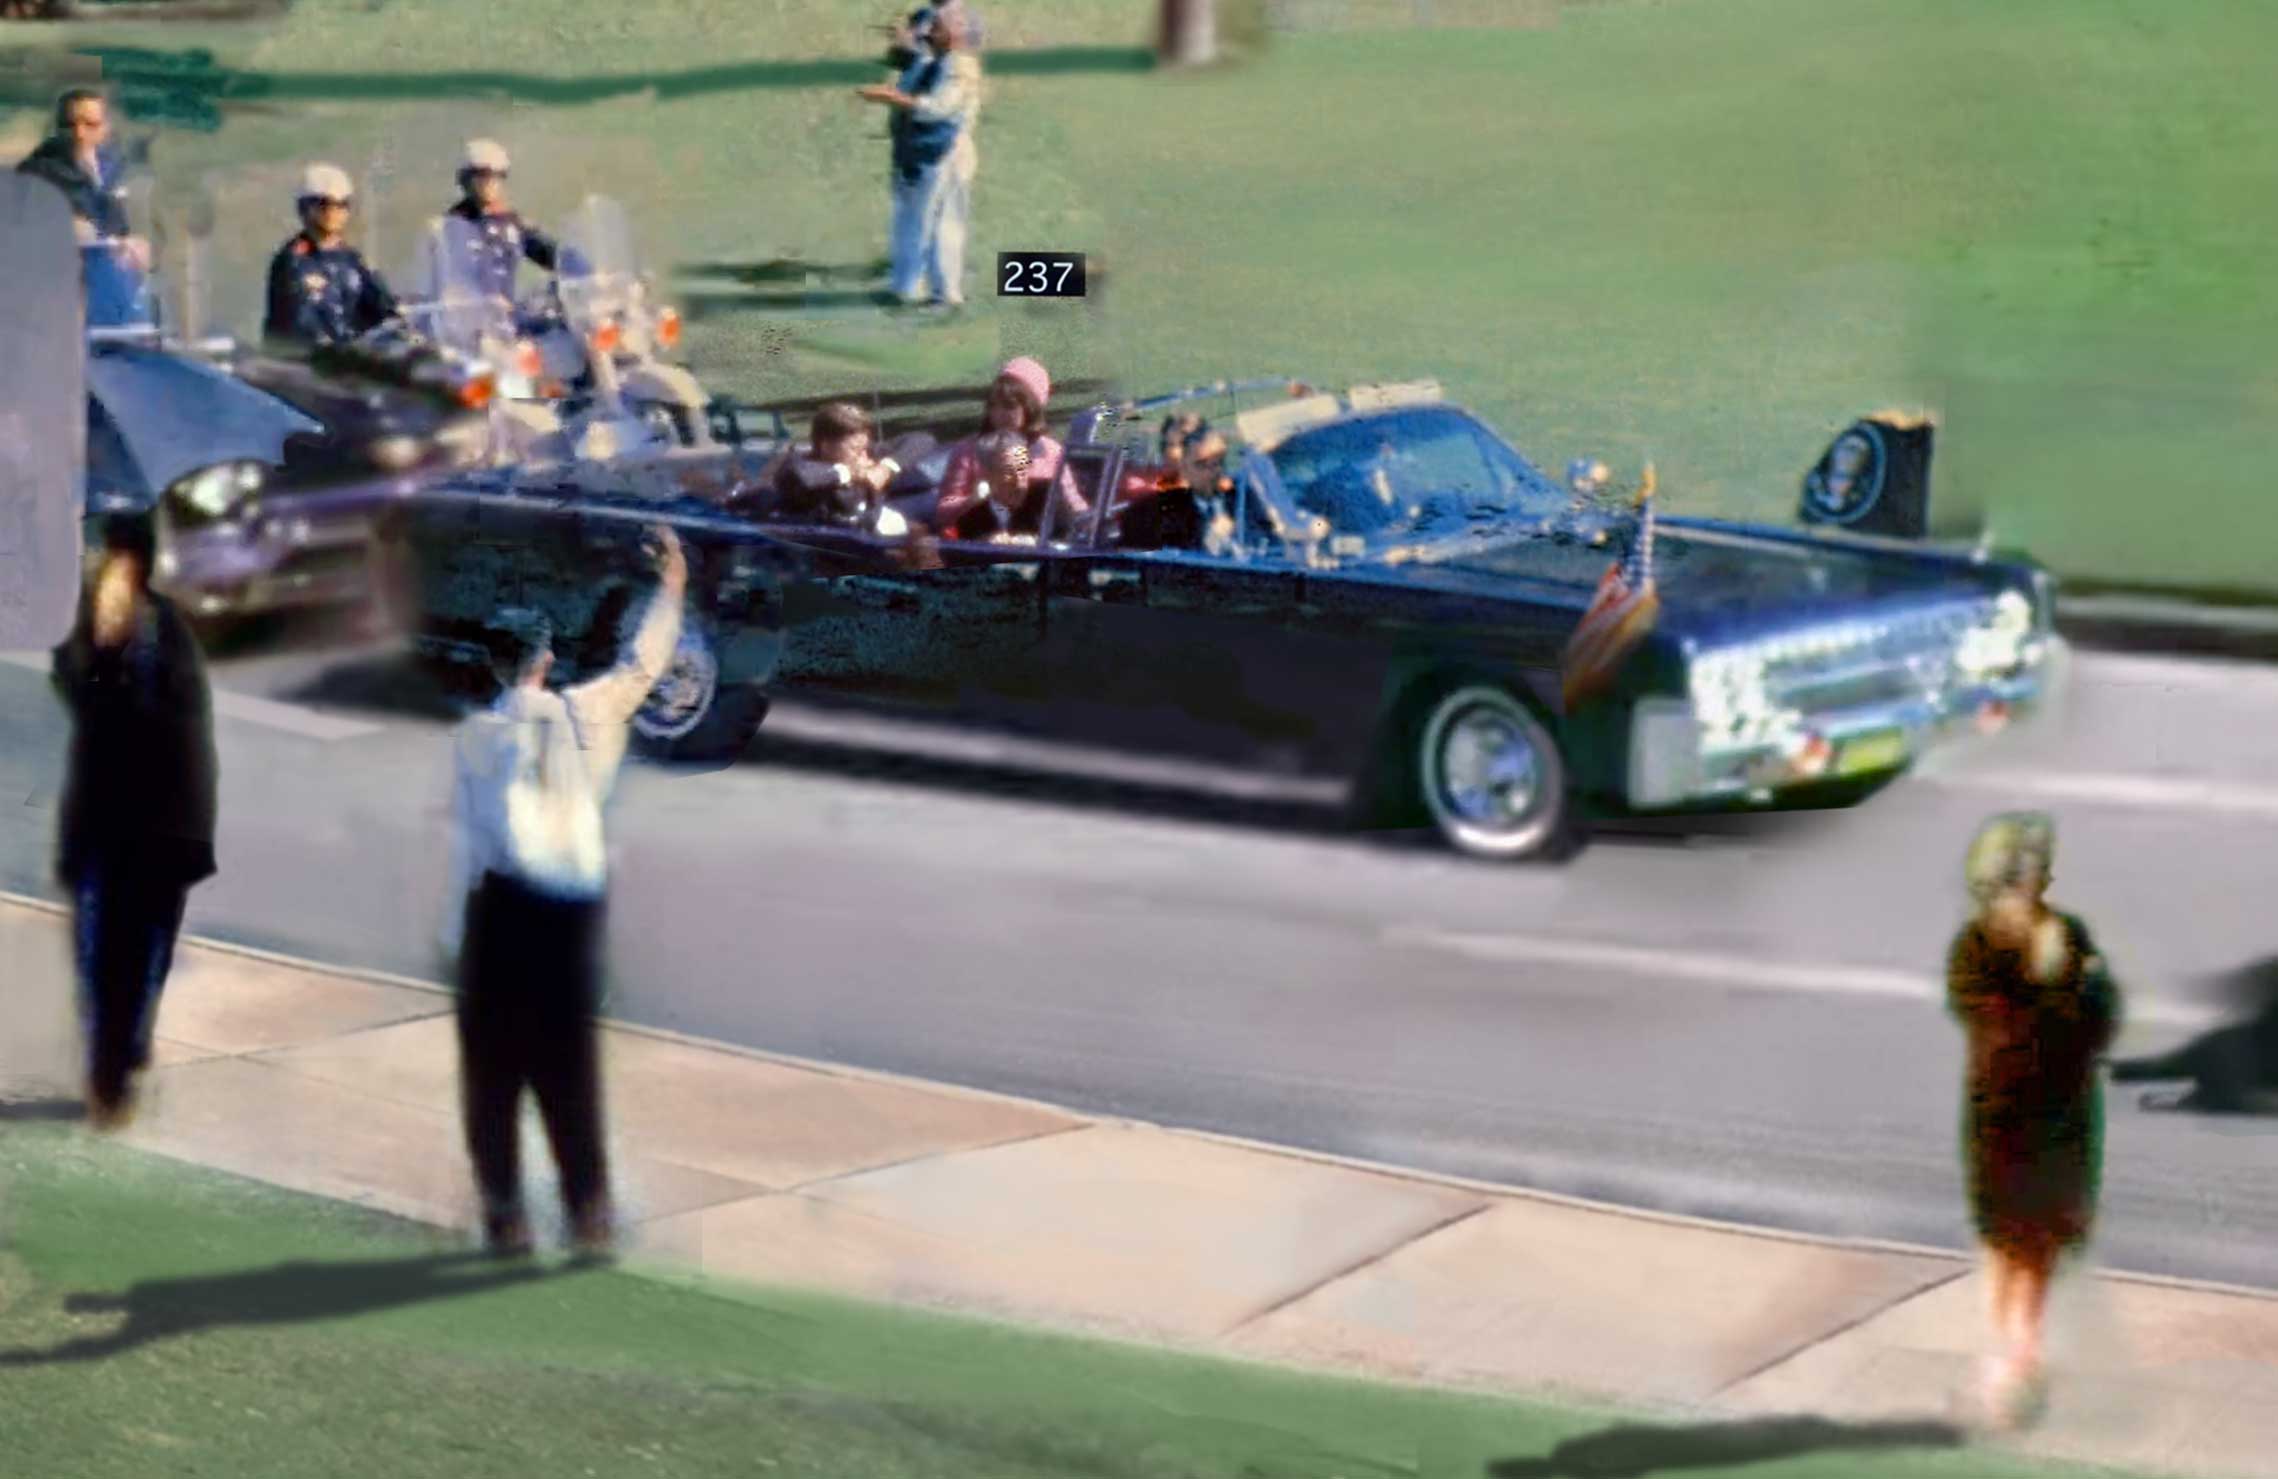 President John F Kennedy s Assassination